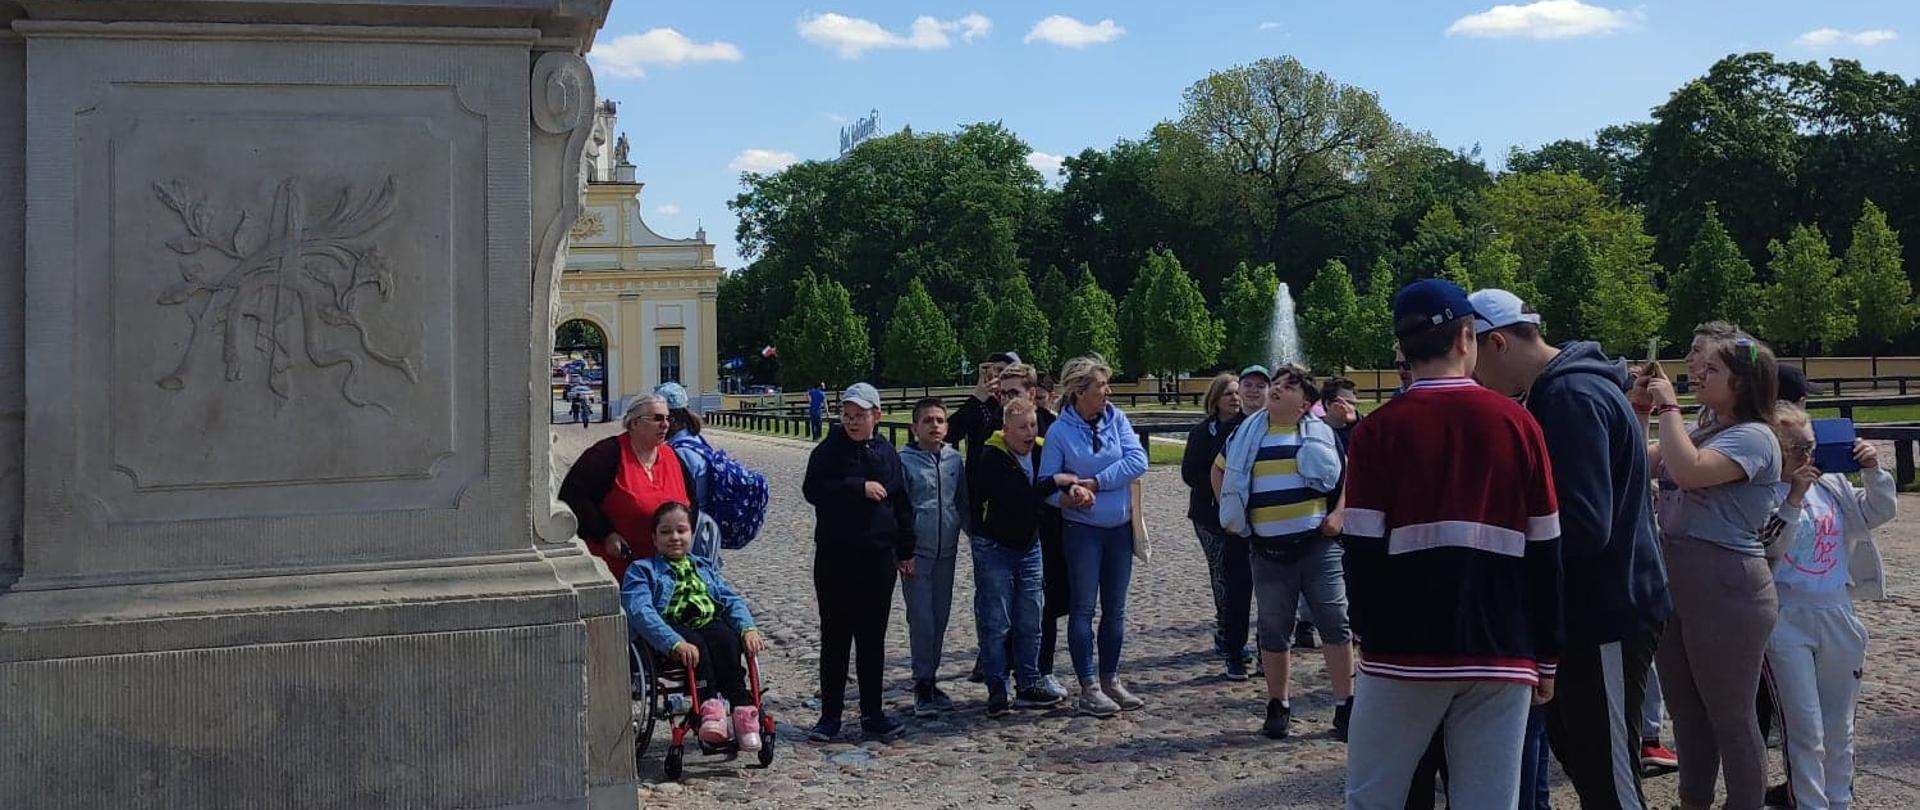 Na zdjęciu widoczna jest grupa dzieci i młodzieży stojąca pod pomnikiem